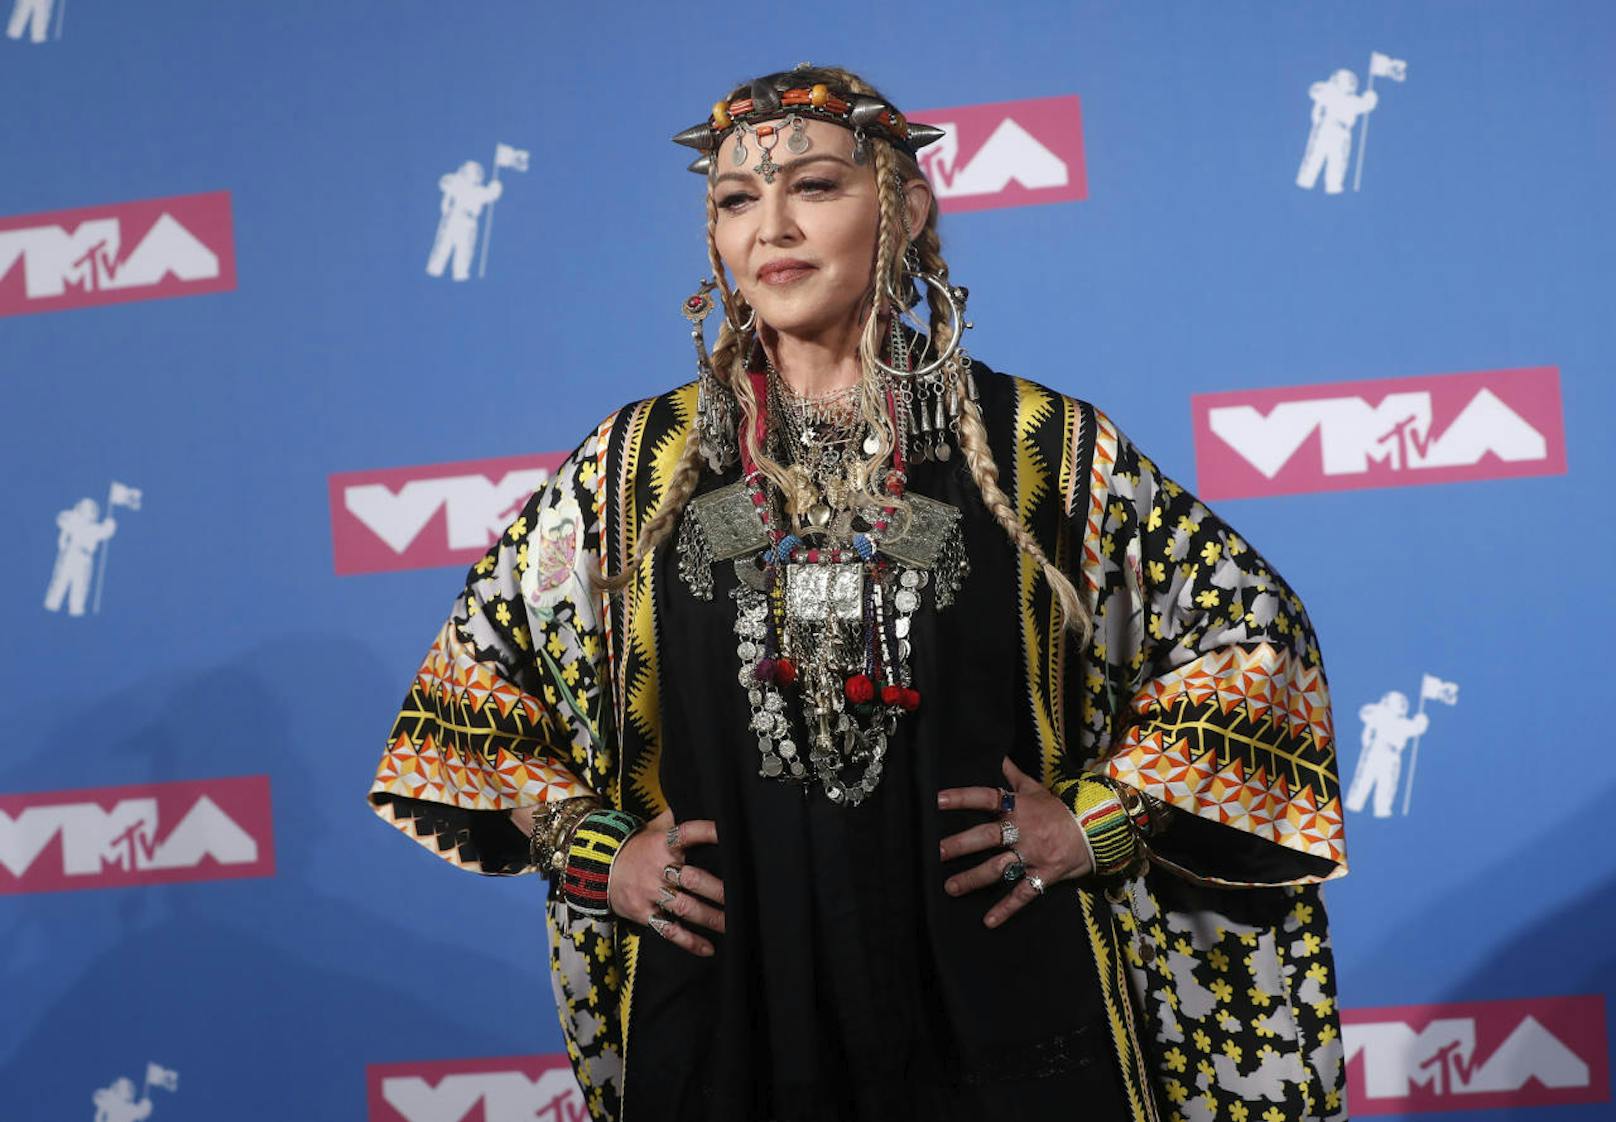 Madonna feierte ihren 60. Geburtstag in Marokko und holte sich dort modische Anregungen.